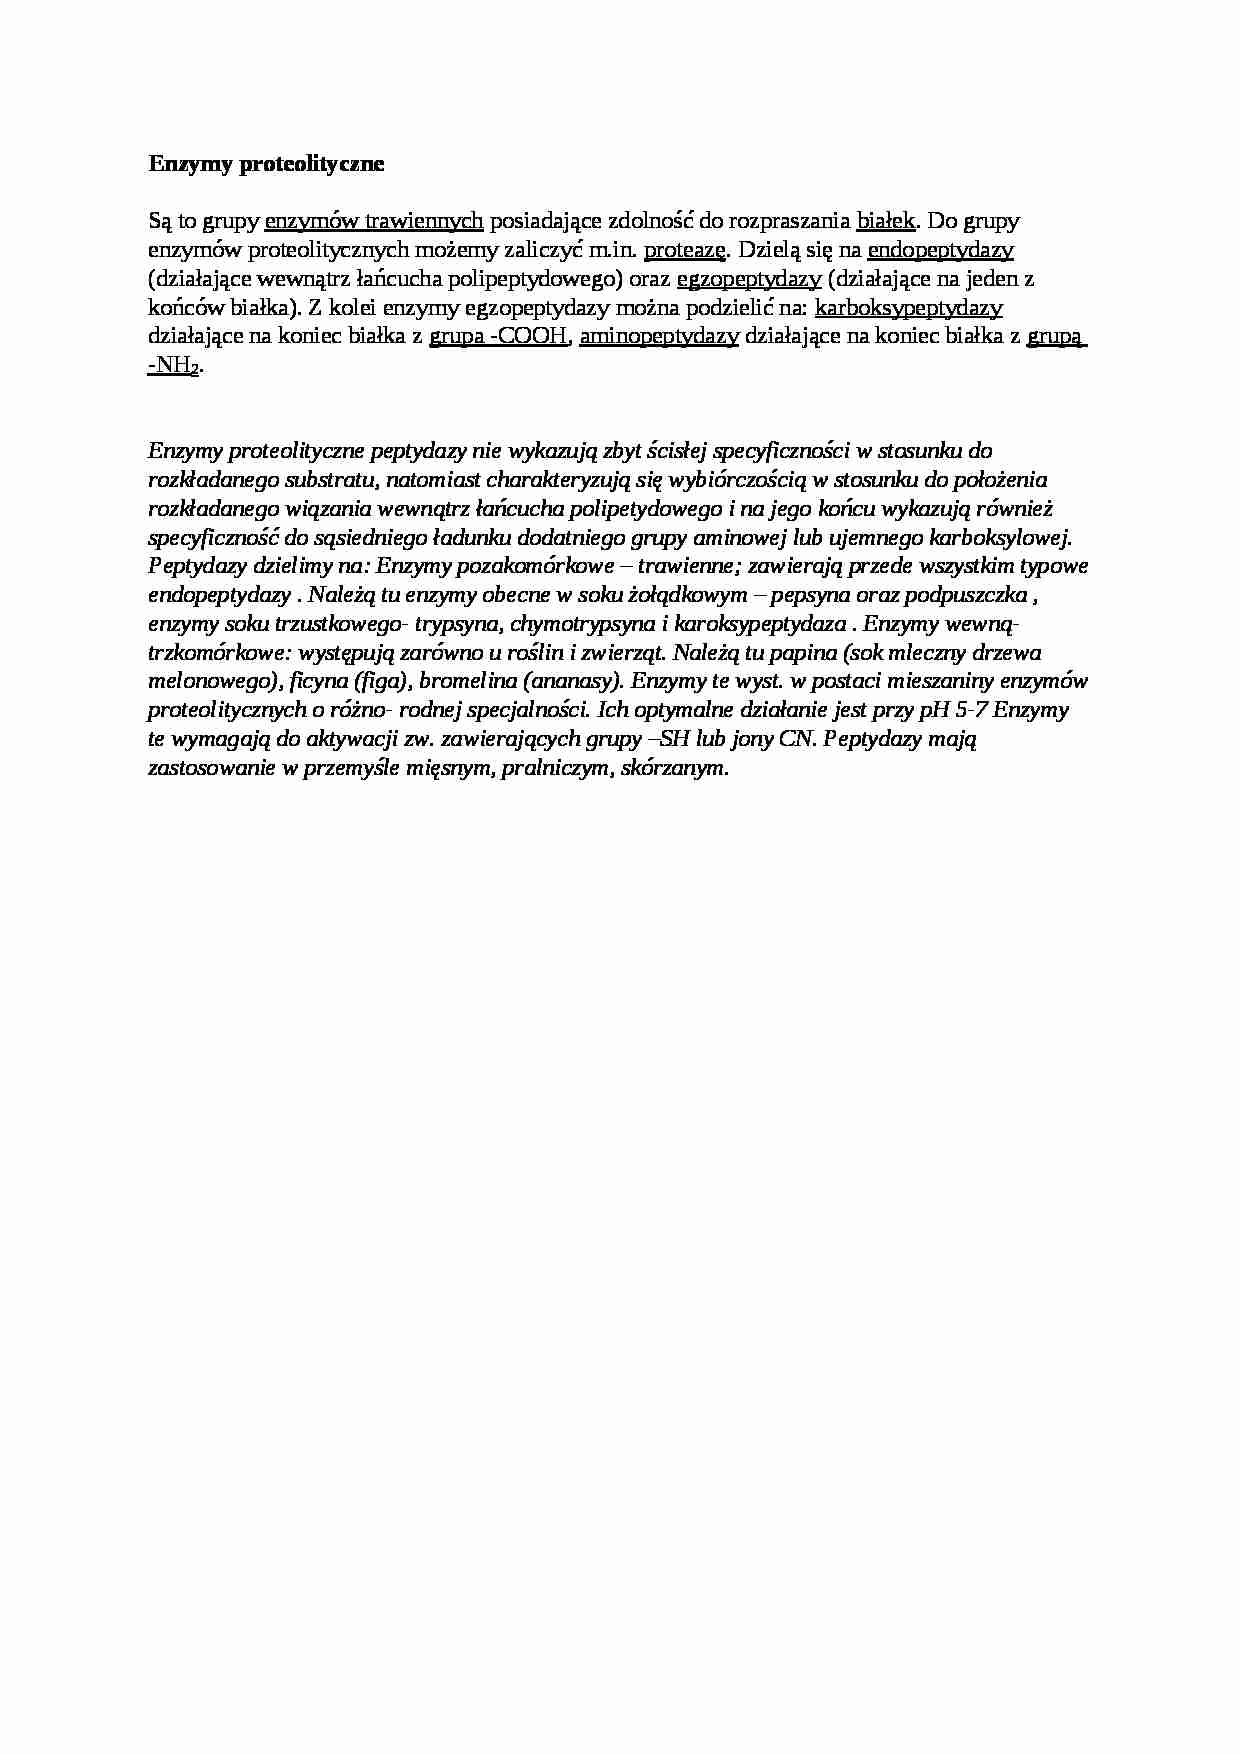 Enzymy proteolityczne - wykład - strona 1